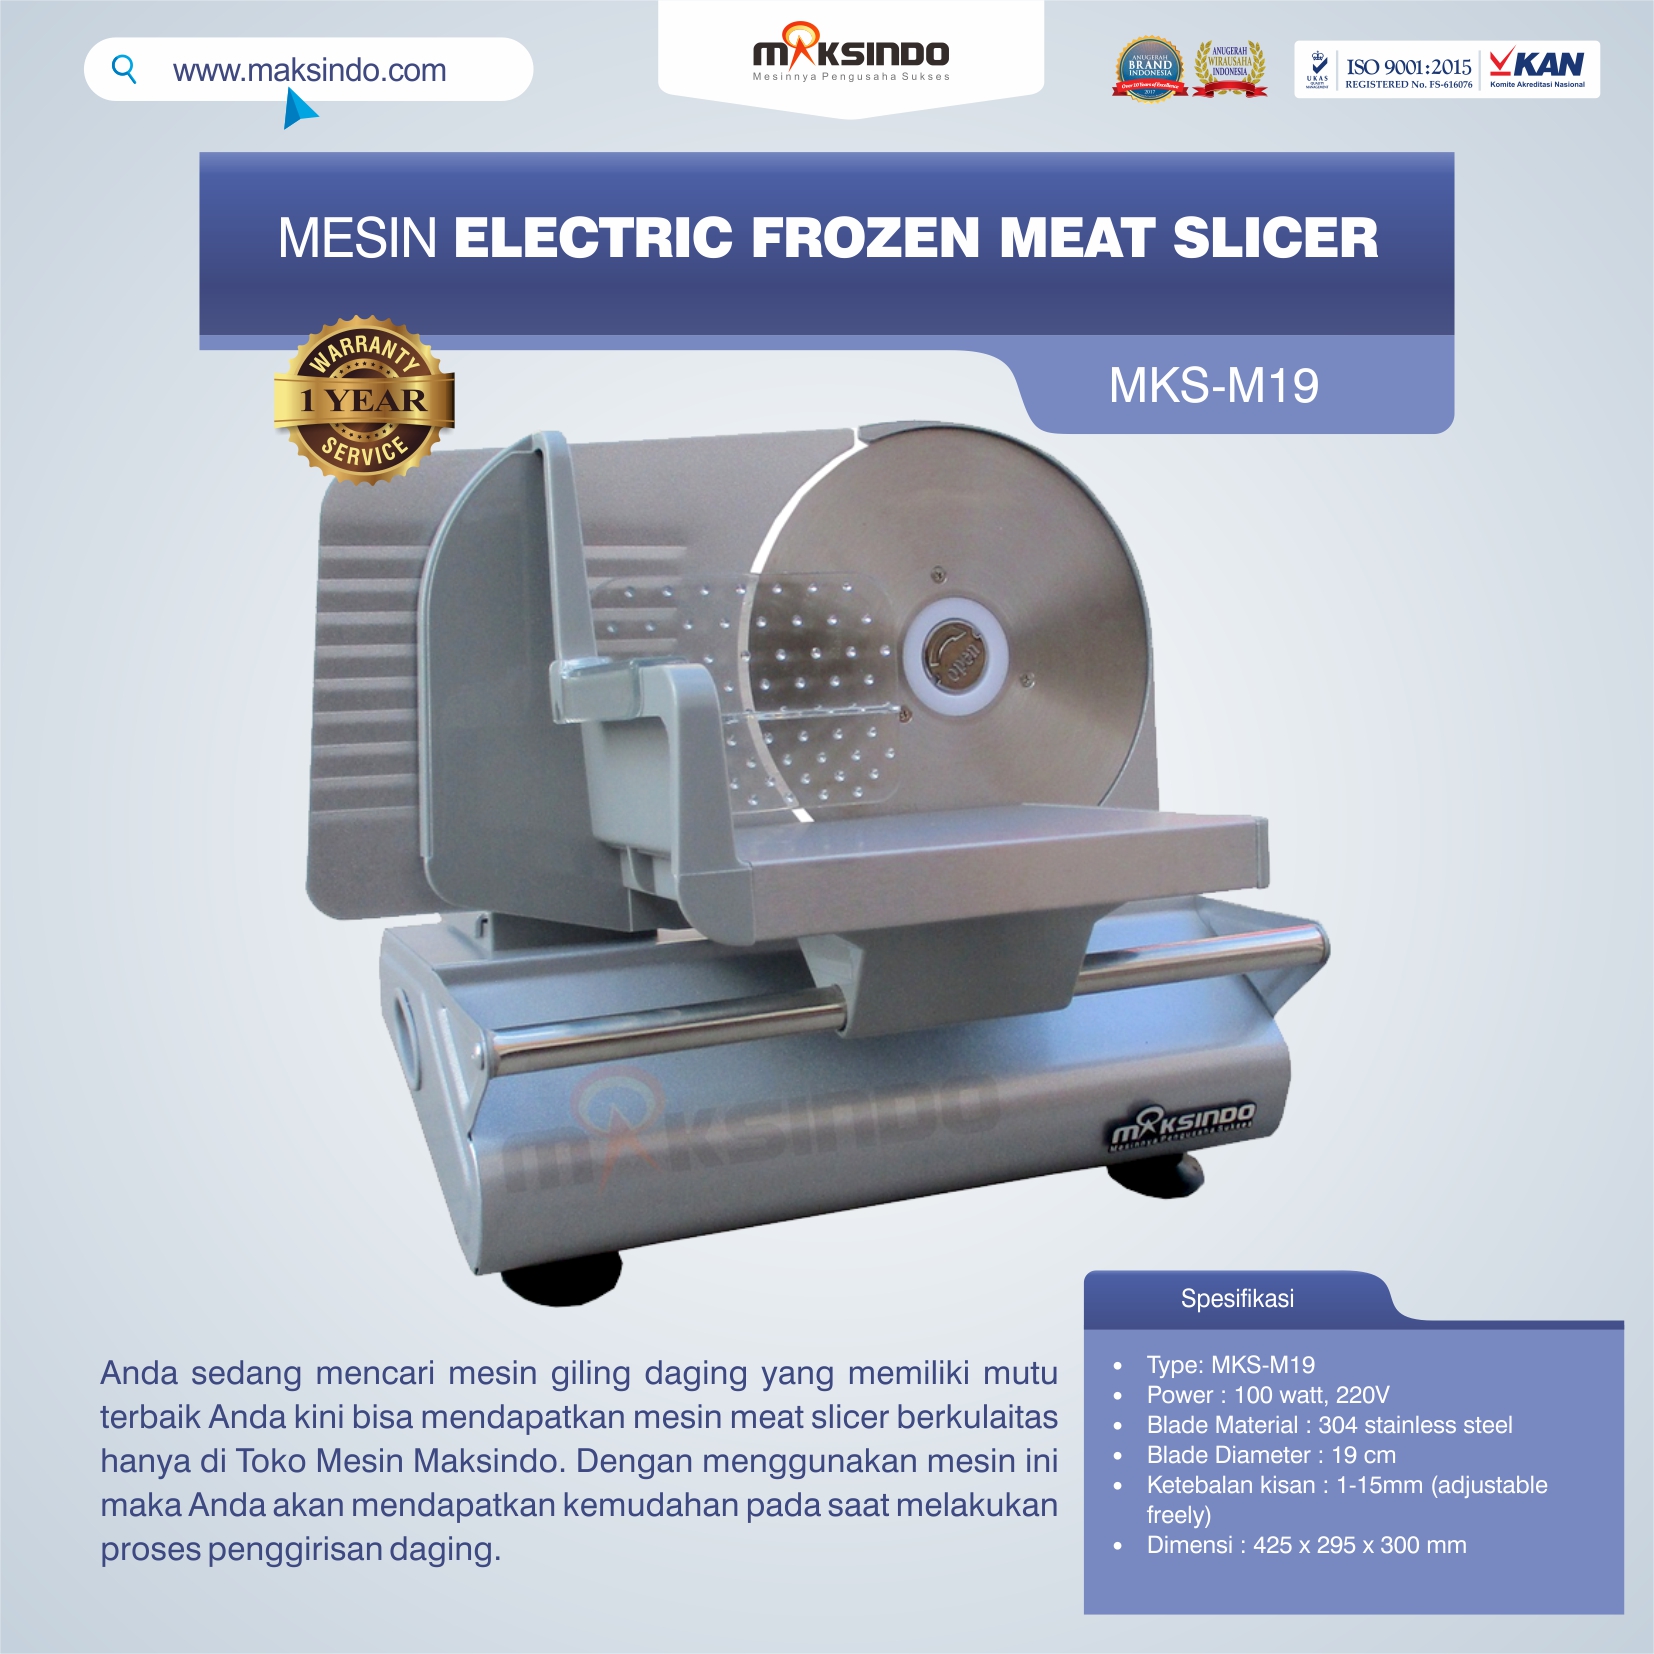 Jual Mesin Electric Frozen Meat Slicer MKS-M19 di Malang